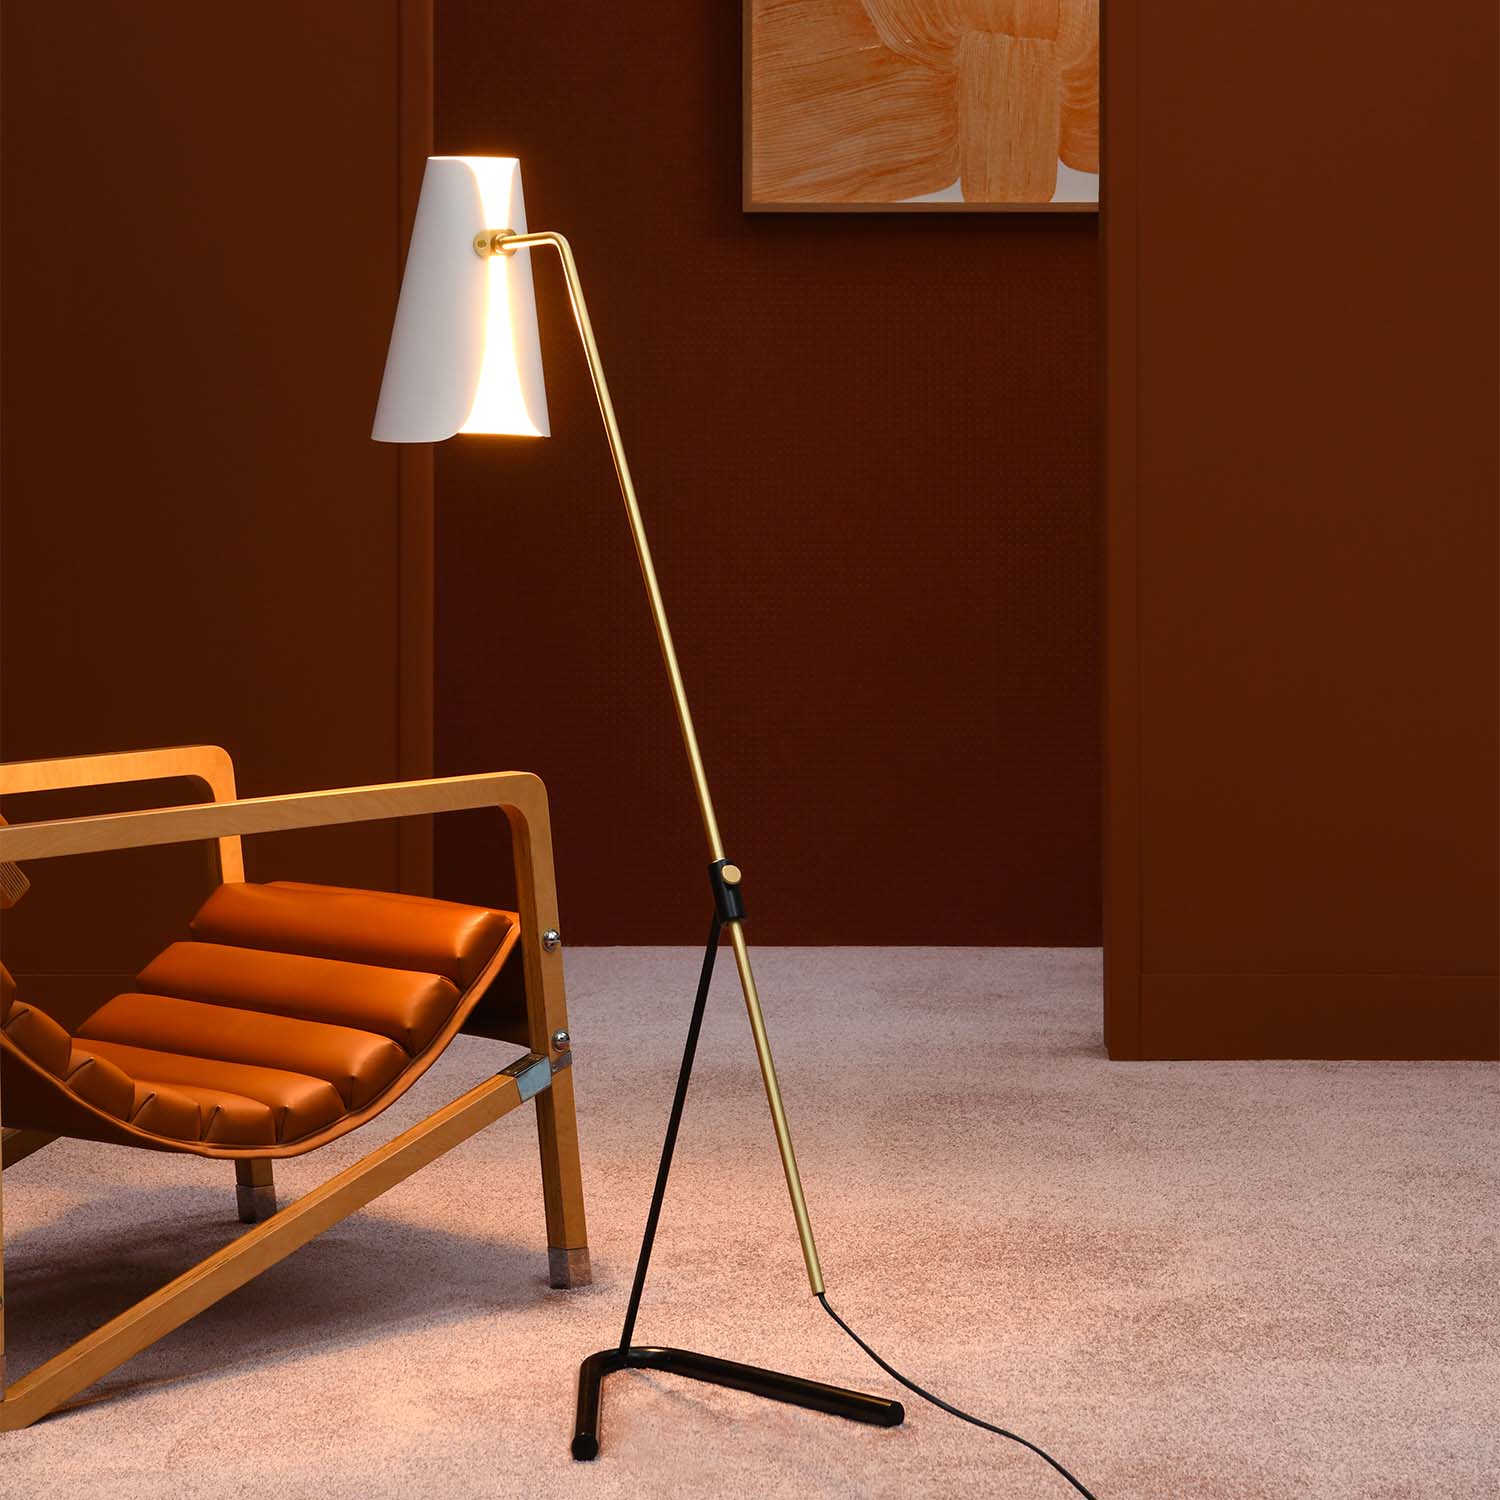 G21 - Retro vintage floor lamp 50s design